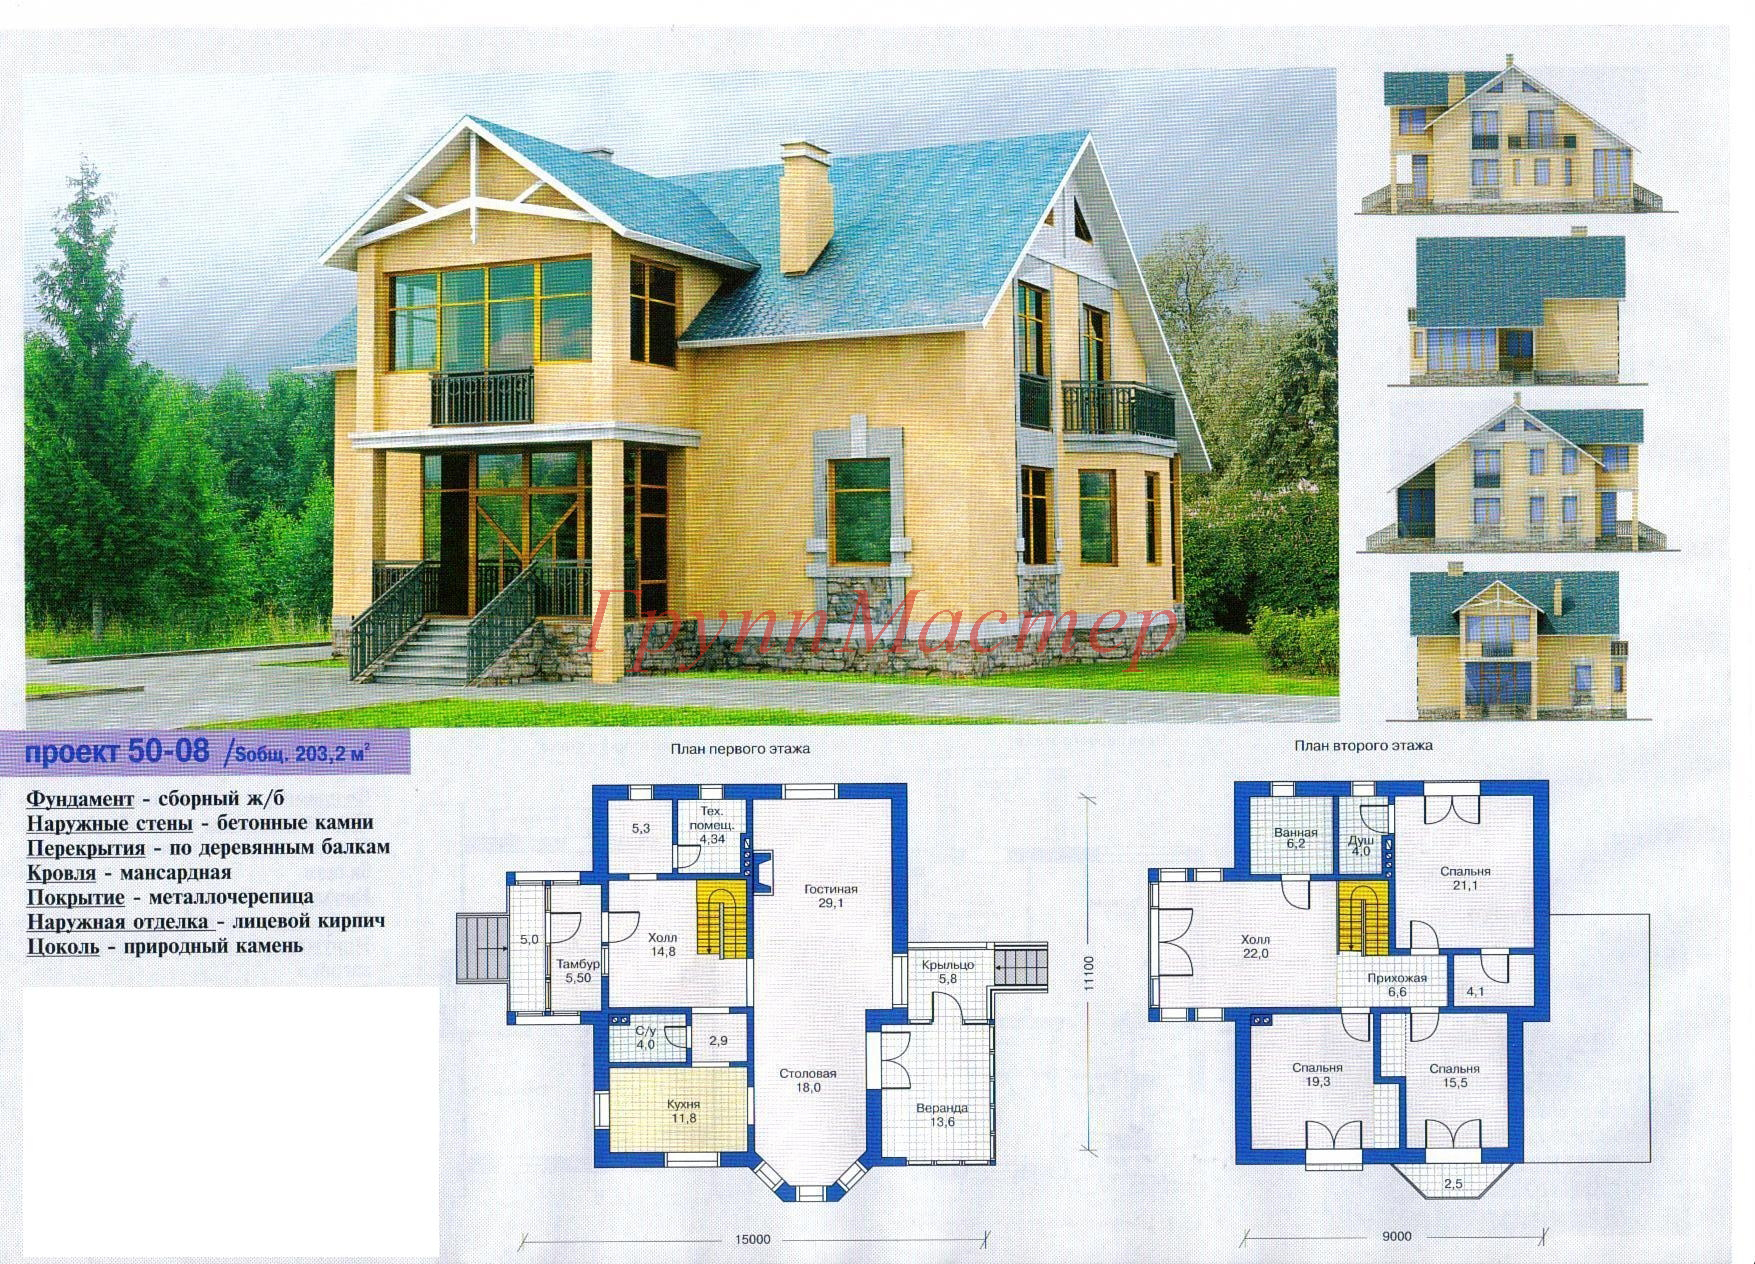 Проекты домов и чертежи: готовые и типовые. Каталог содержит планировки, планы и чертежи